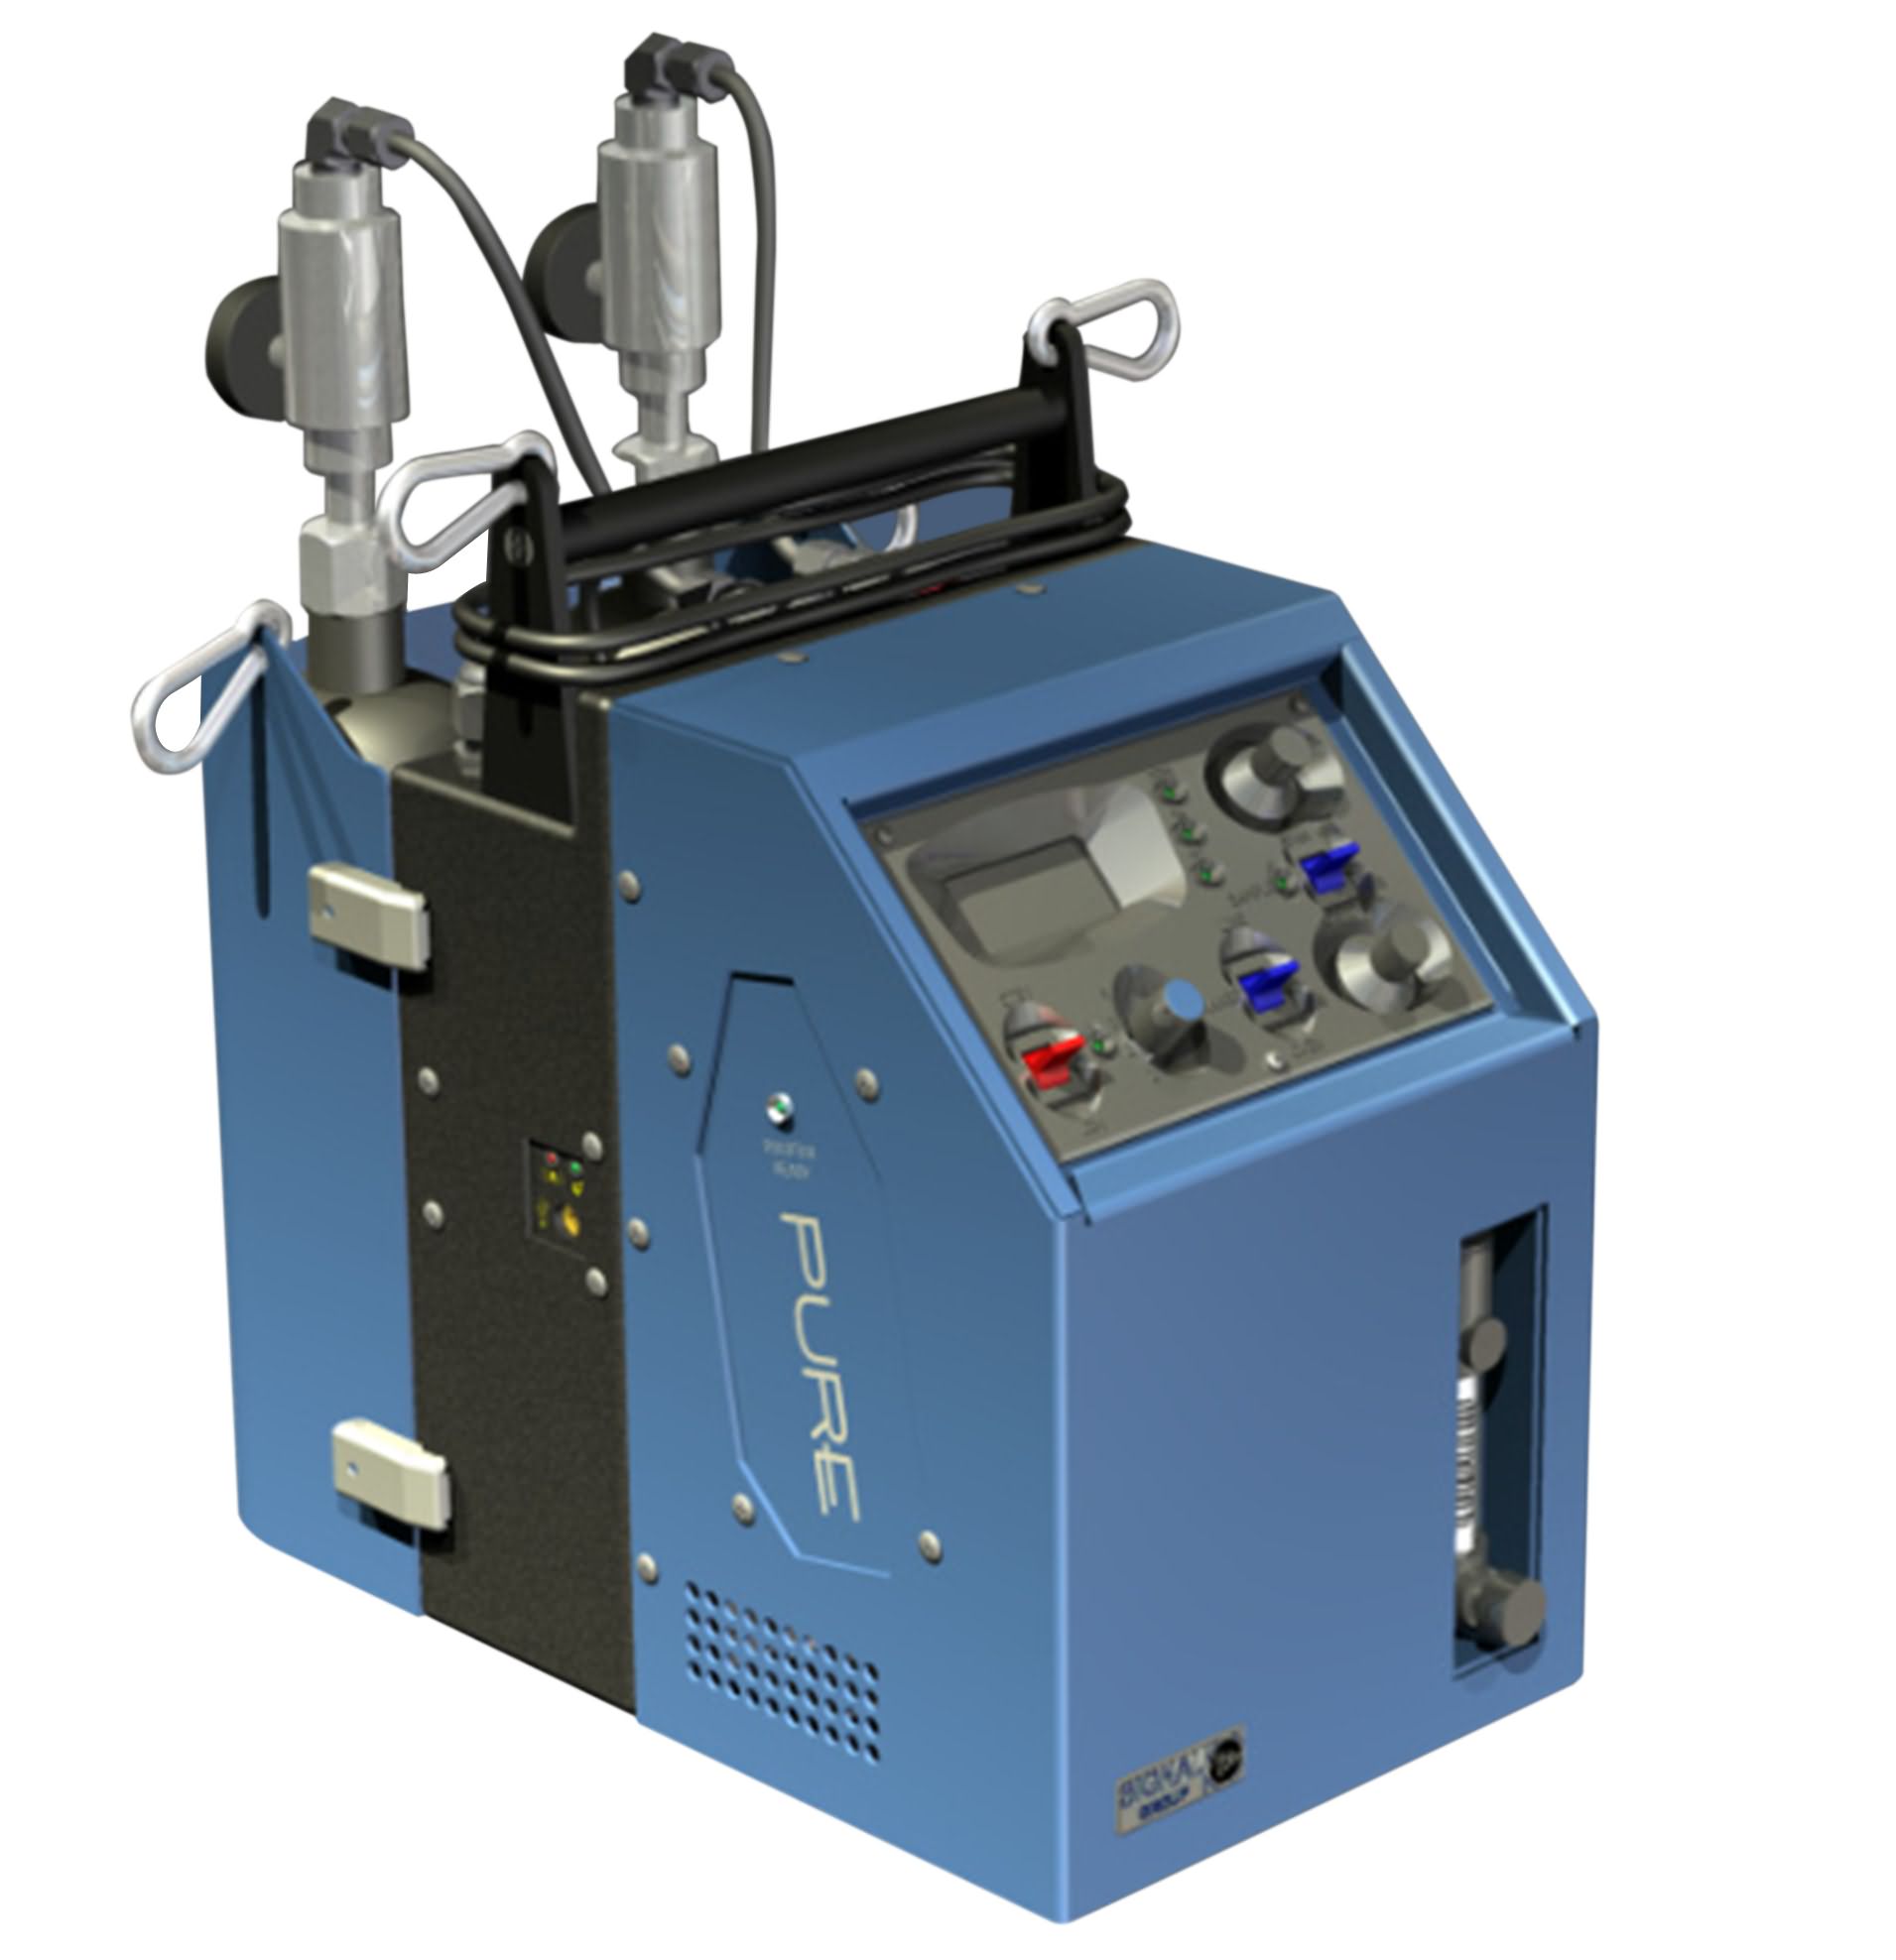 便携式碳氢分析仪Model3010HFID/便携式碳氢分析仪